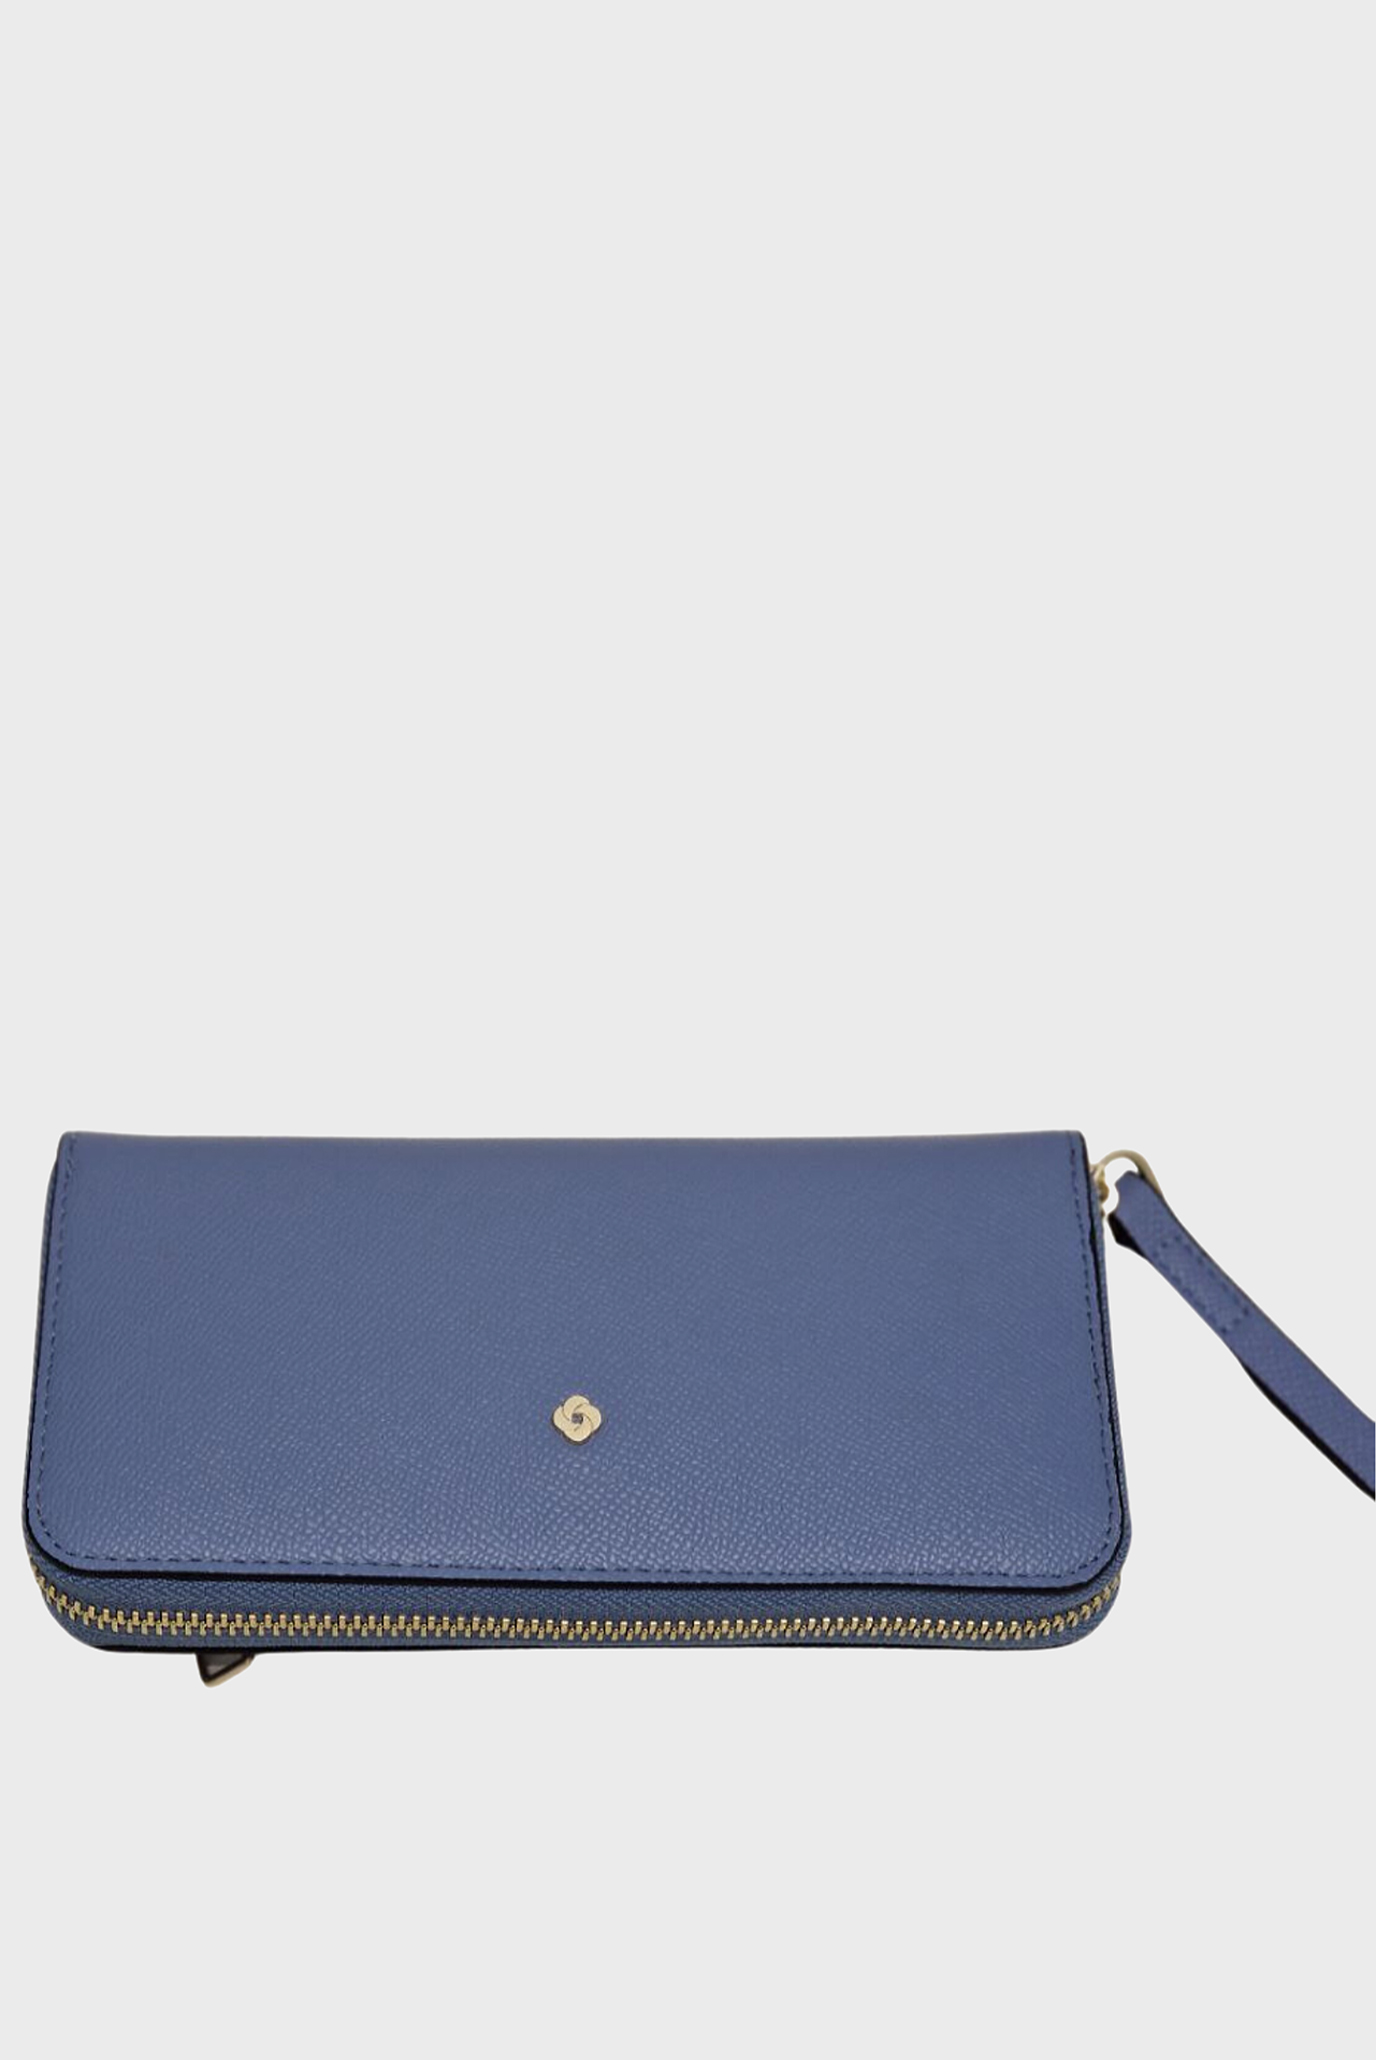 Жіночий синій гаманець CHROMATE SLG 1